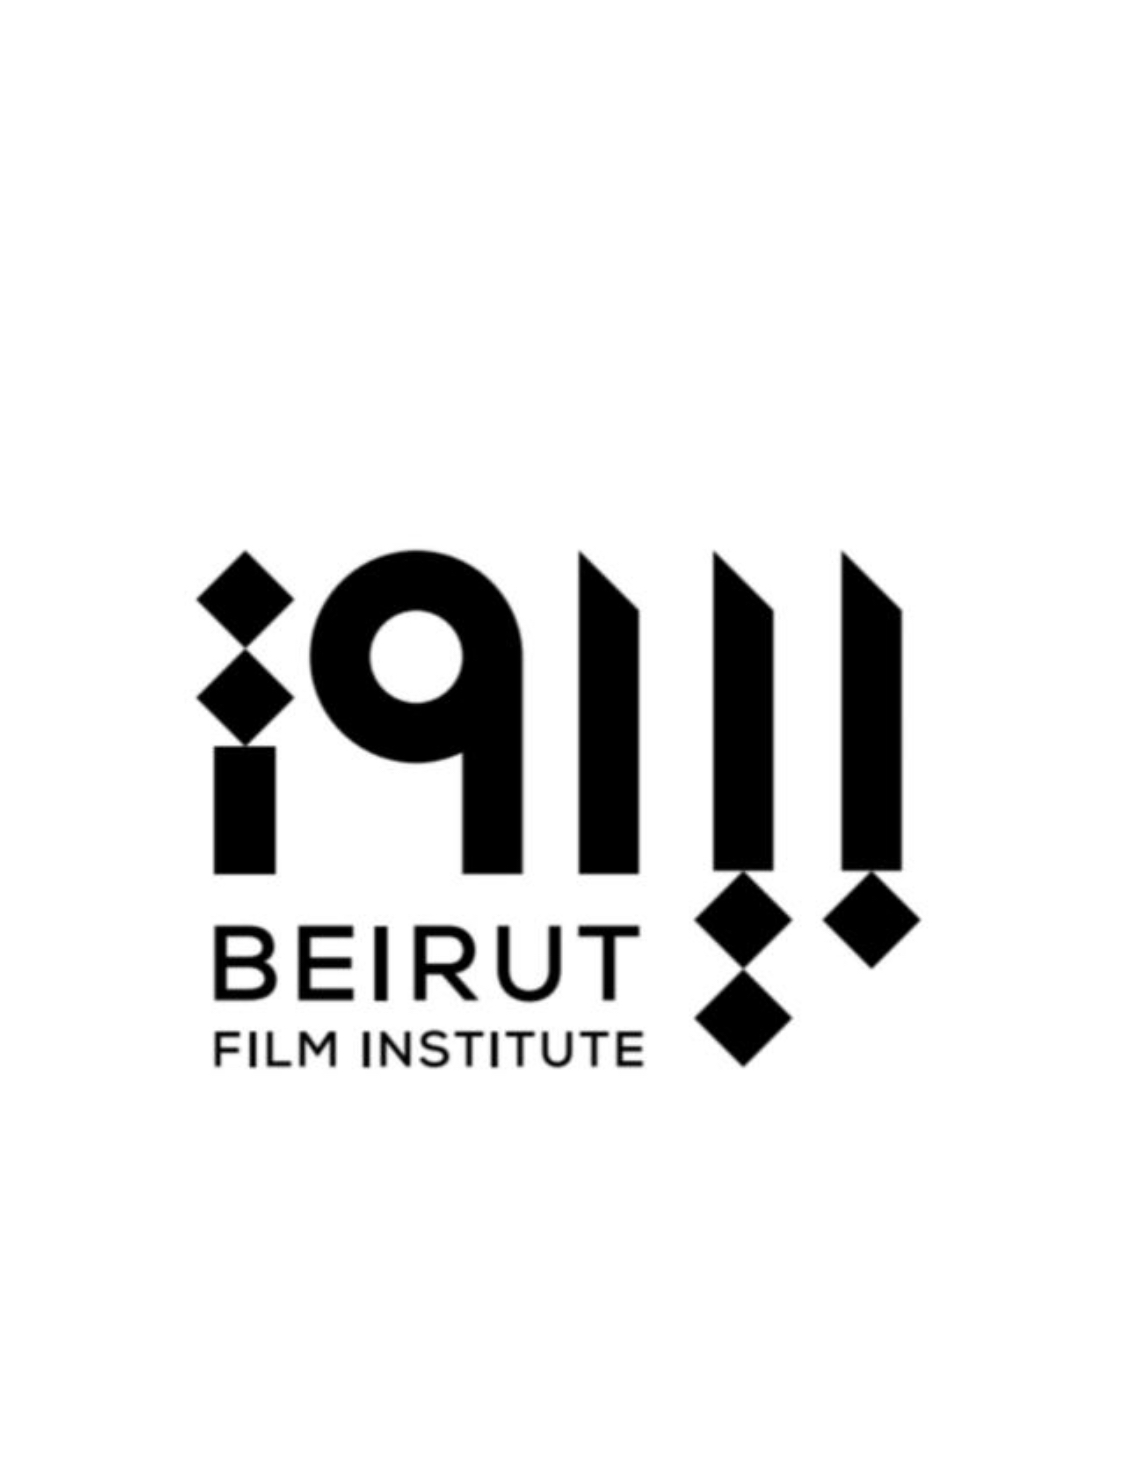 Beirut Film Institute